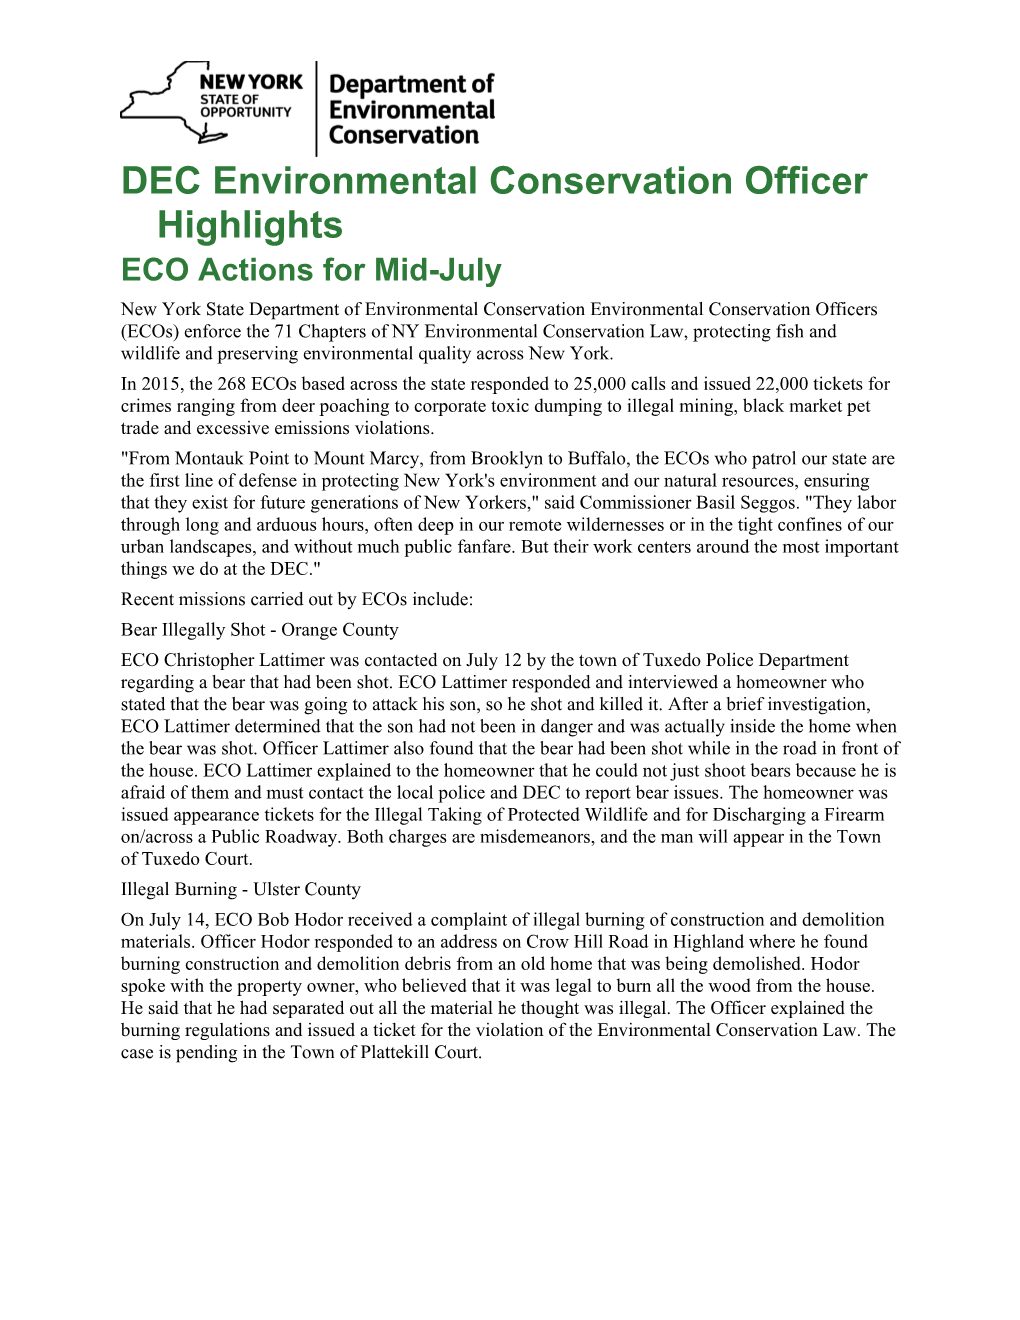 DEC Environmental Conservation Officer Highlights